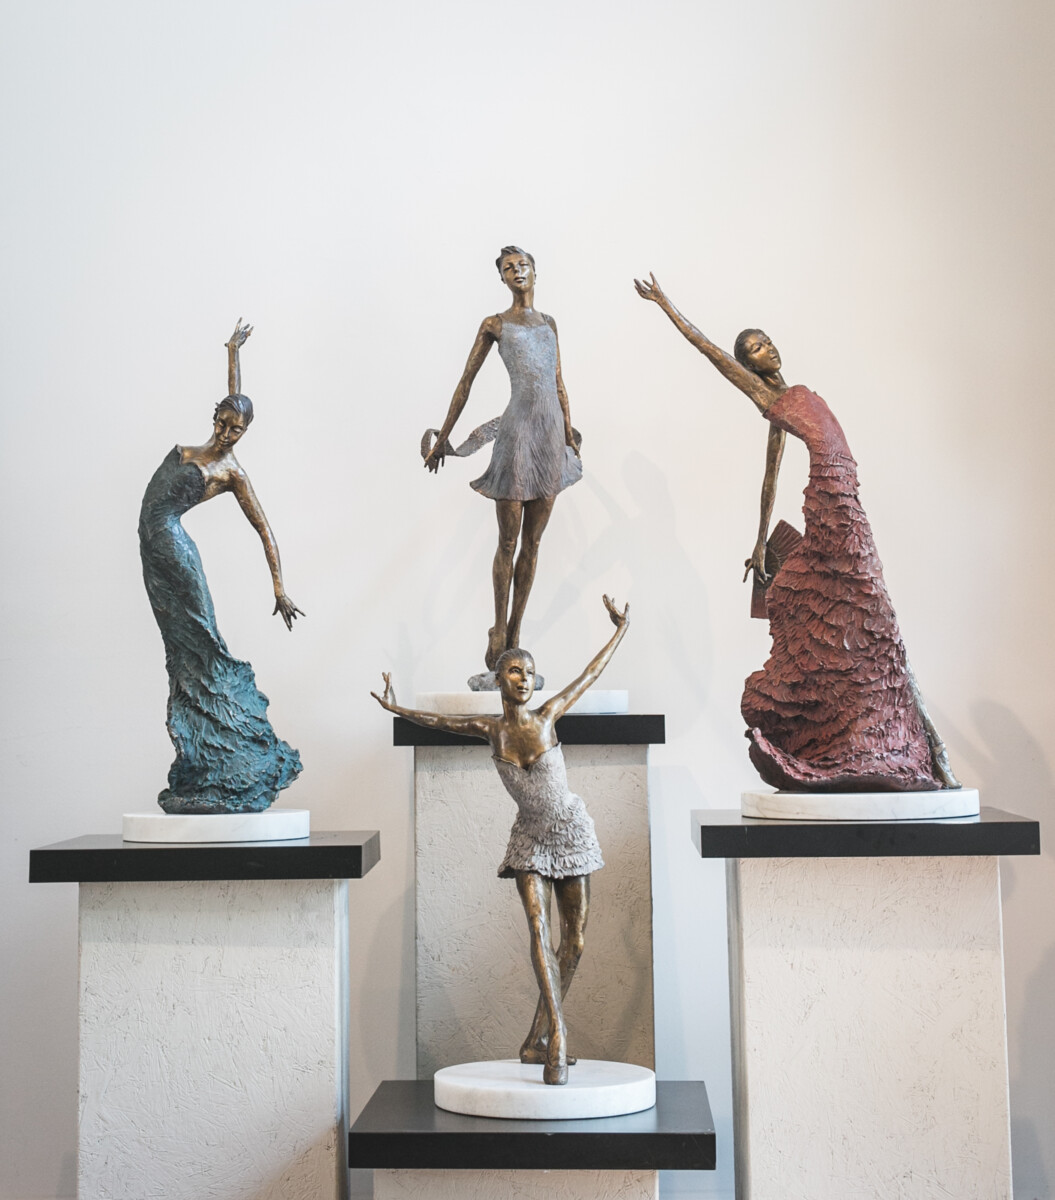 Dancers in bronze sculptures by Elena Bond